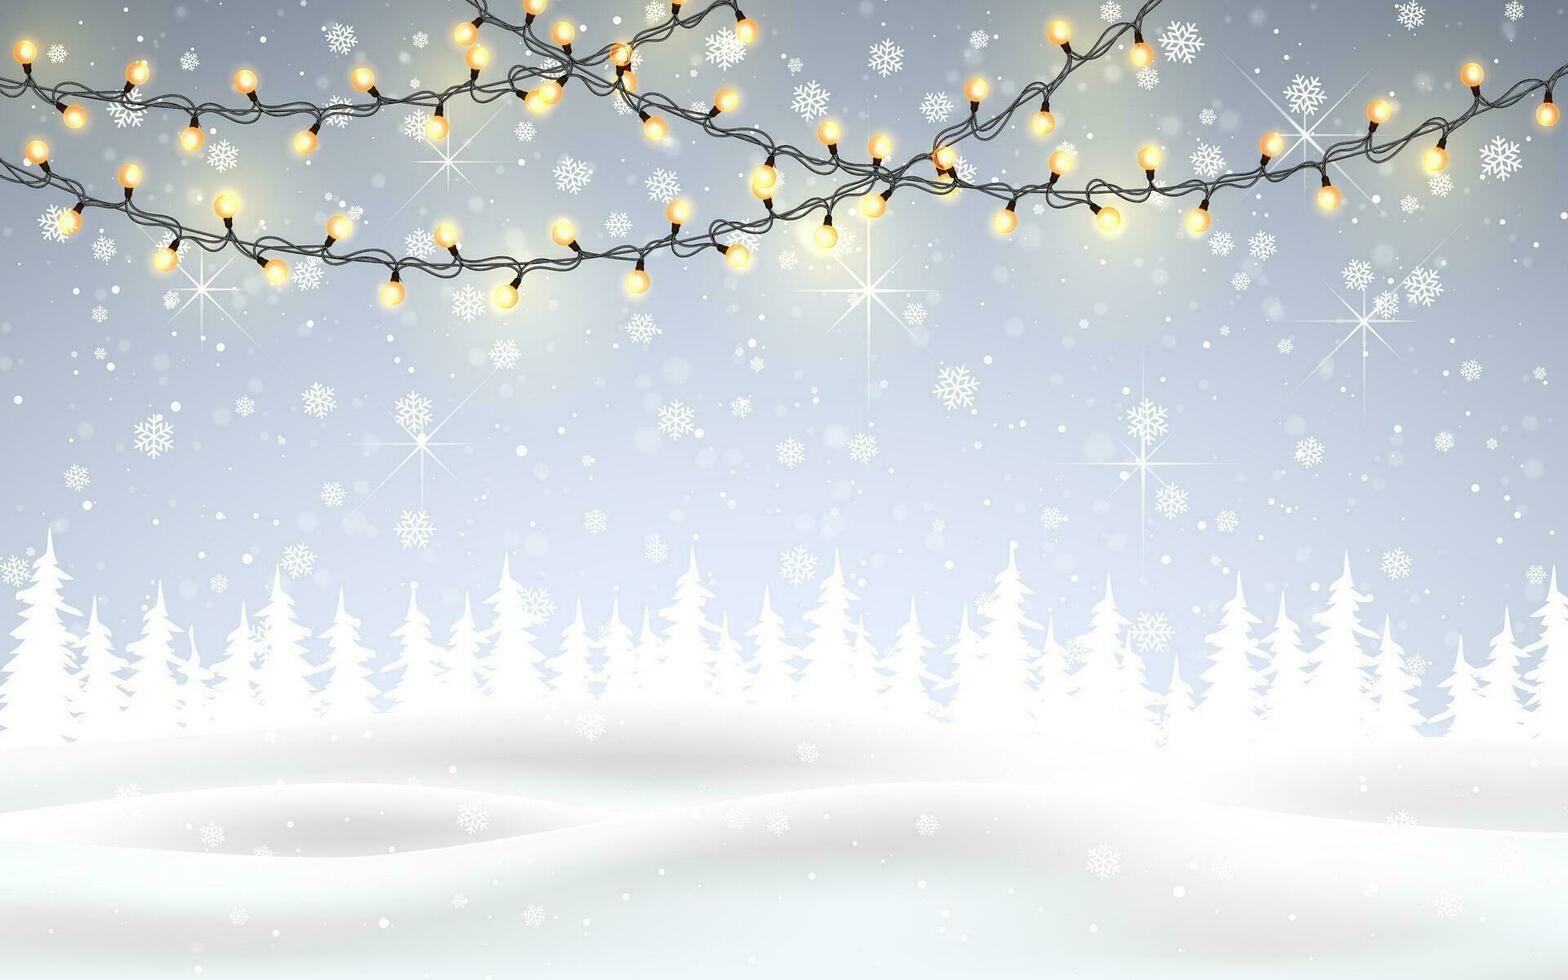 Winter ist Kommen. Weihnachten, schneebedeckt Nacht Wald Landschaft mit fallen Schnee, Tannen, Licht Girlande, Schneeflocken zum Winter und Neu Jahr Feiertage. Weihnachten Winter Hintergrund vektor